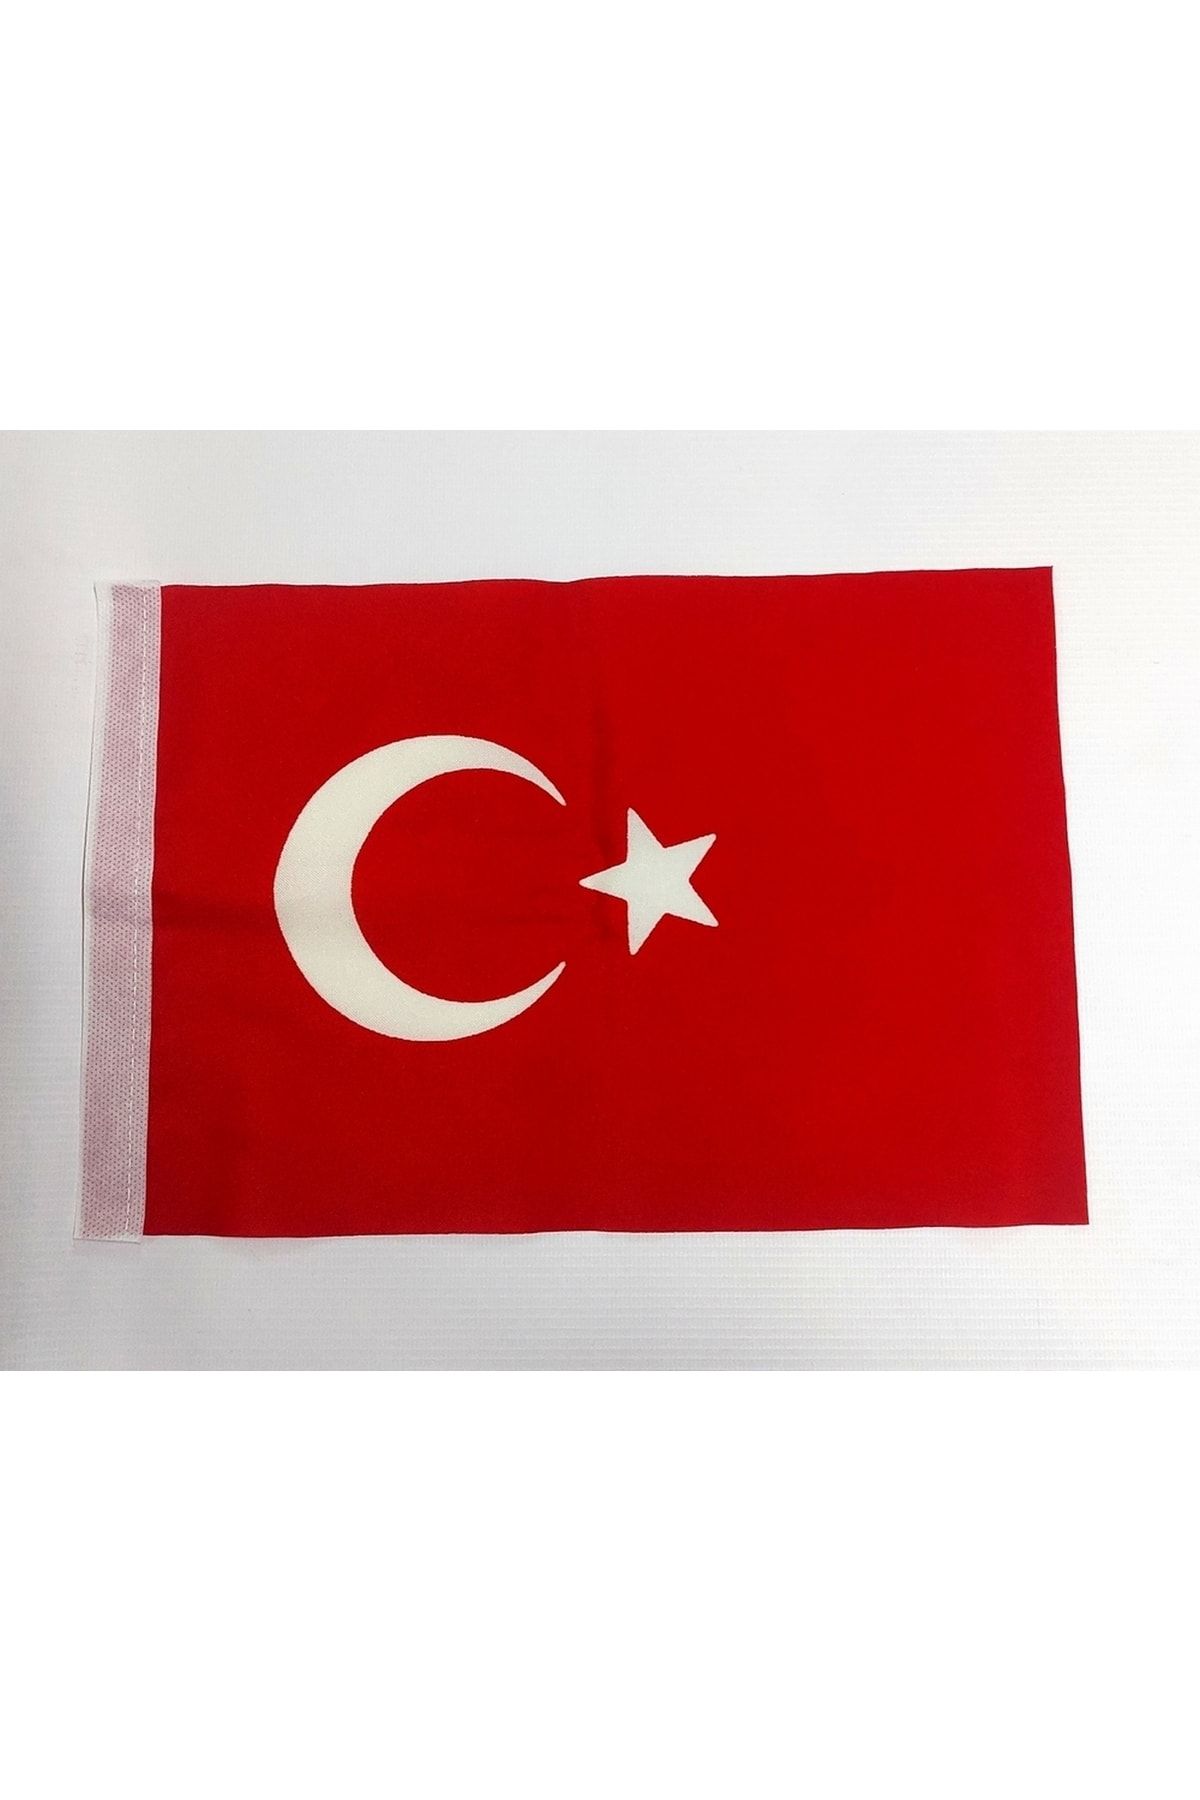 KALE Türk Bayrağı 60 X 90